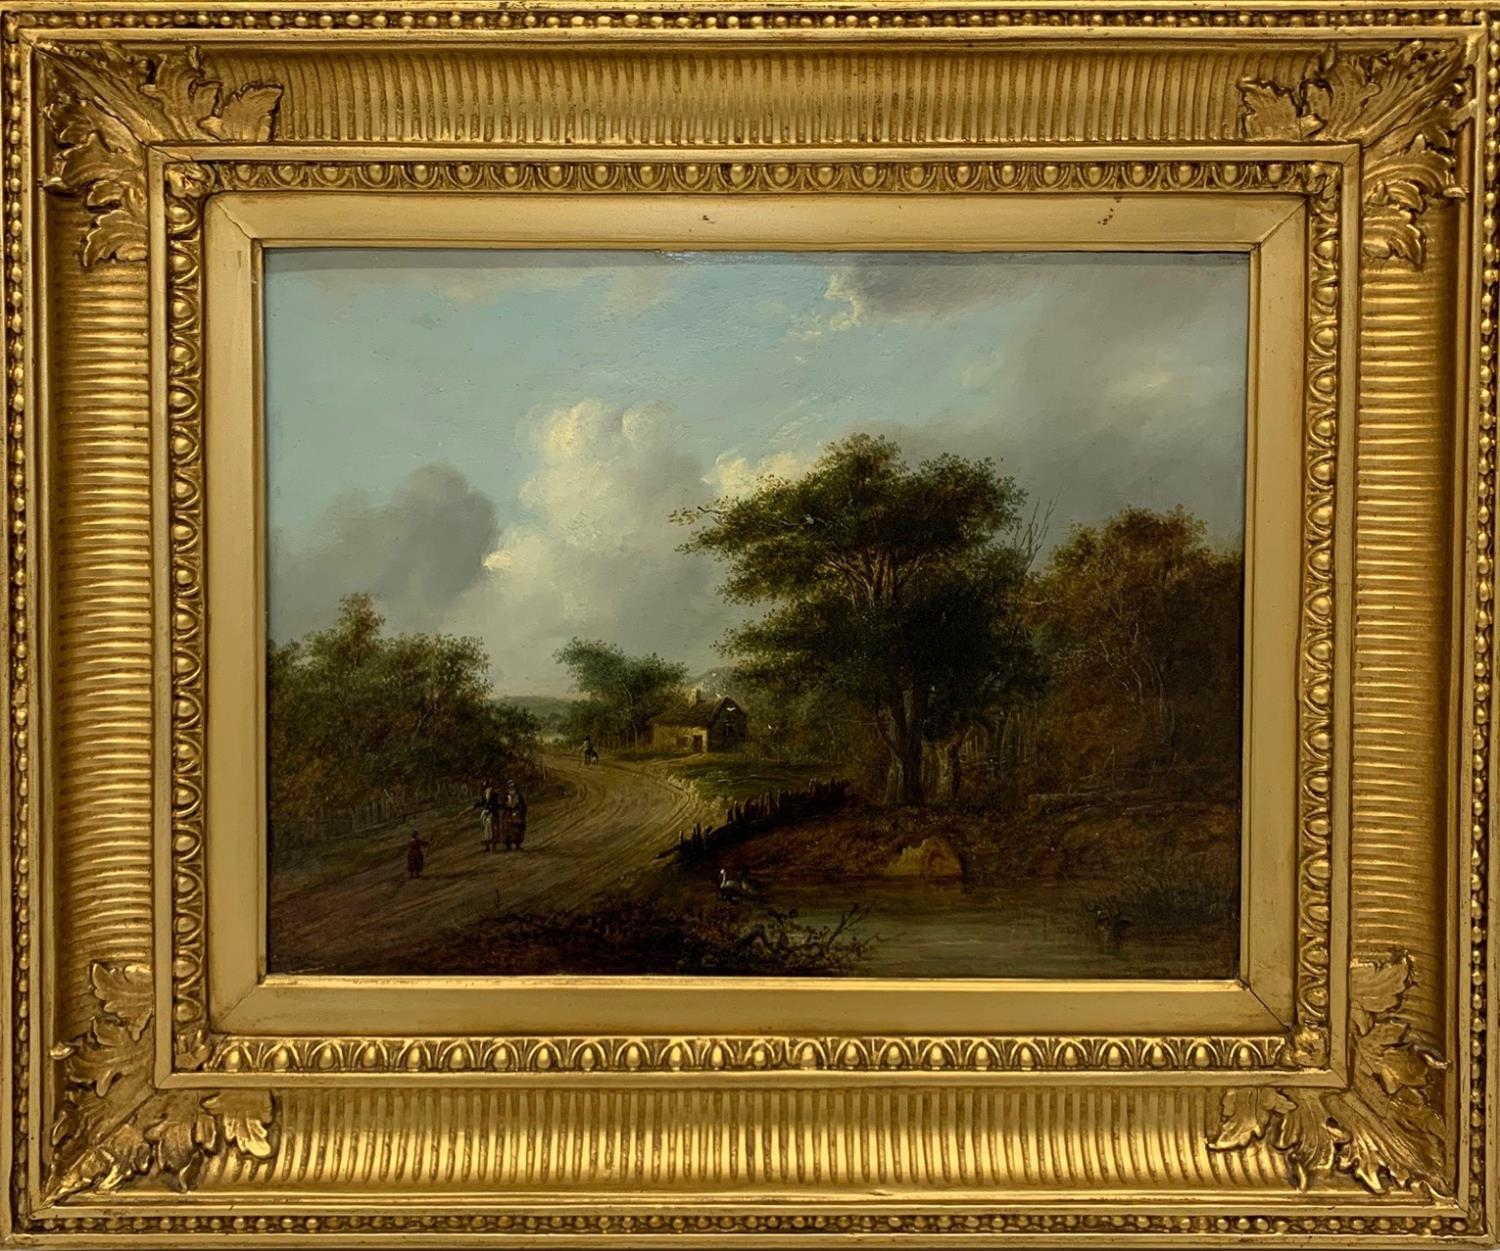 FOLLOWER OF MEINDERT HOBBEMA, 1638 - 1709, OIL ON PANEL Travellers passing a duck pond, gilt framed.